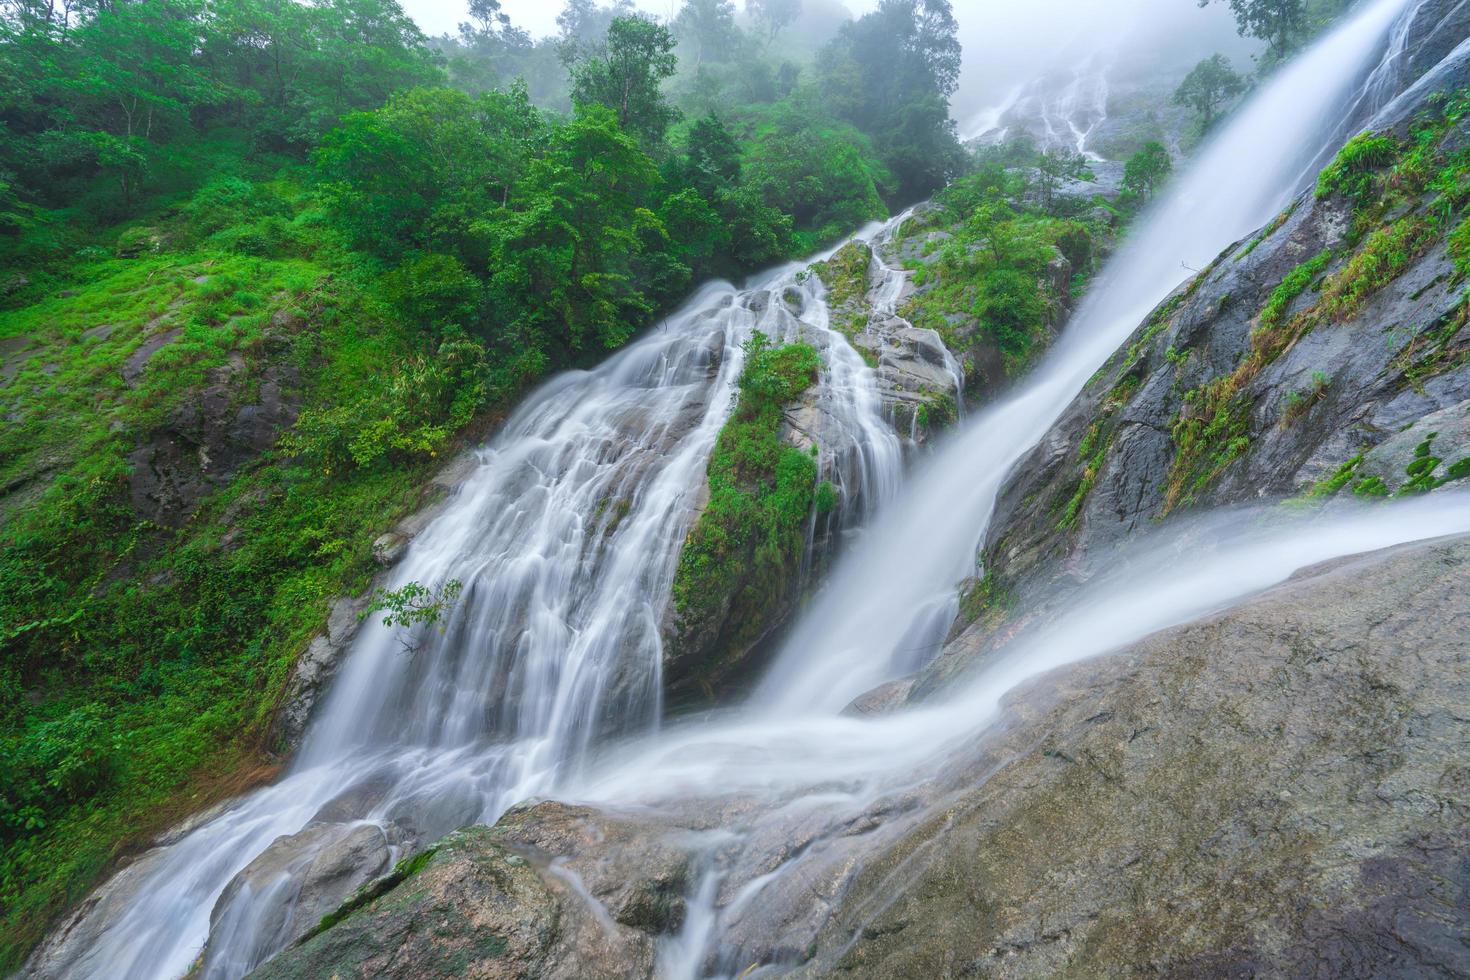 A cachoeira pi tu gro costuma ser chamada de cachoeira em forma de coração Umphang, Tailândia foto